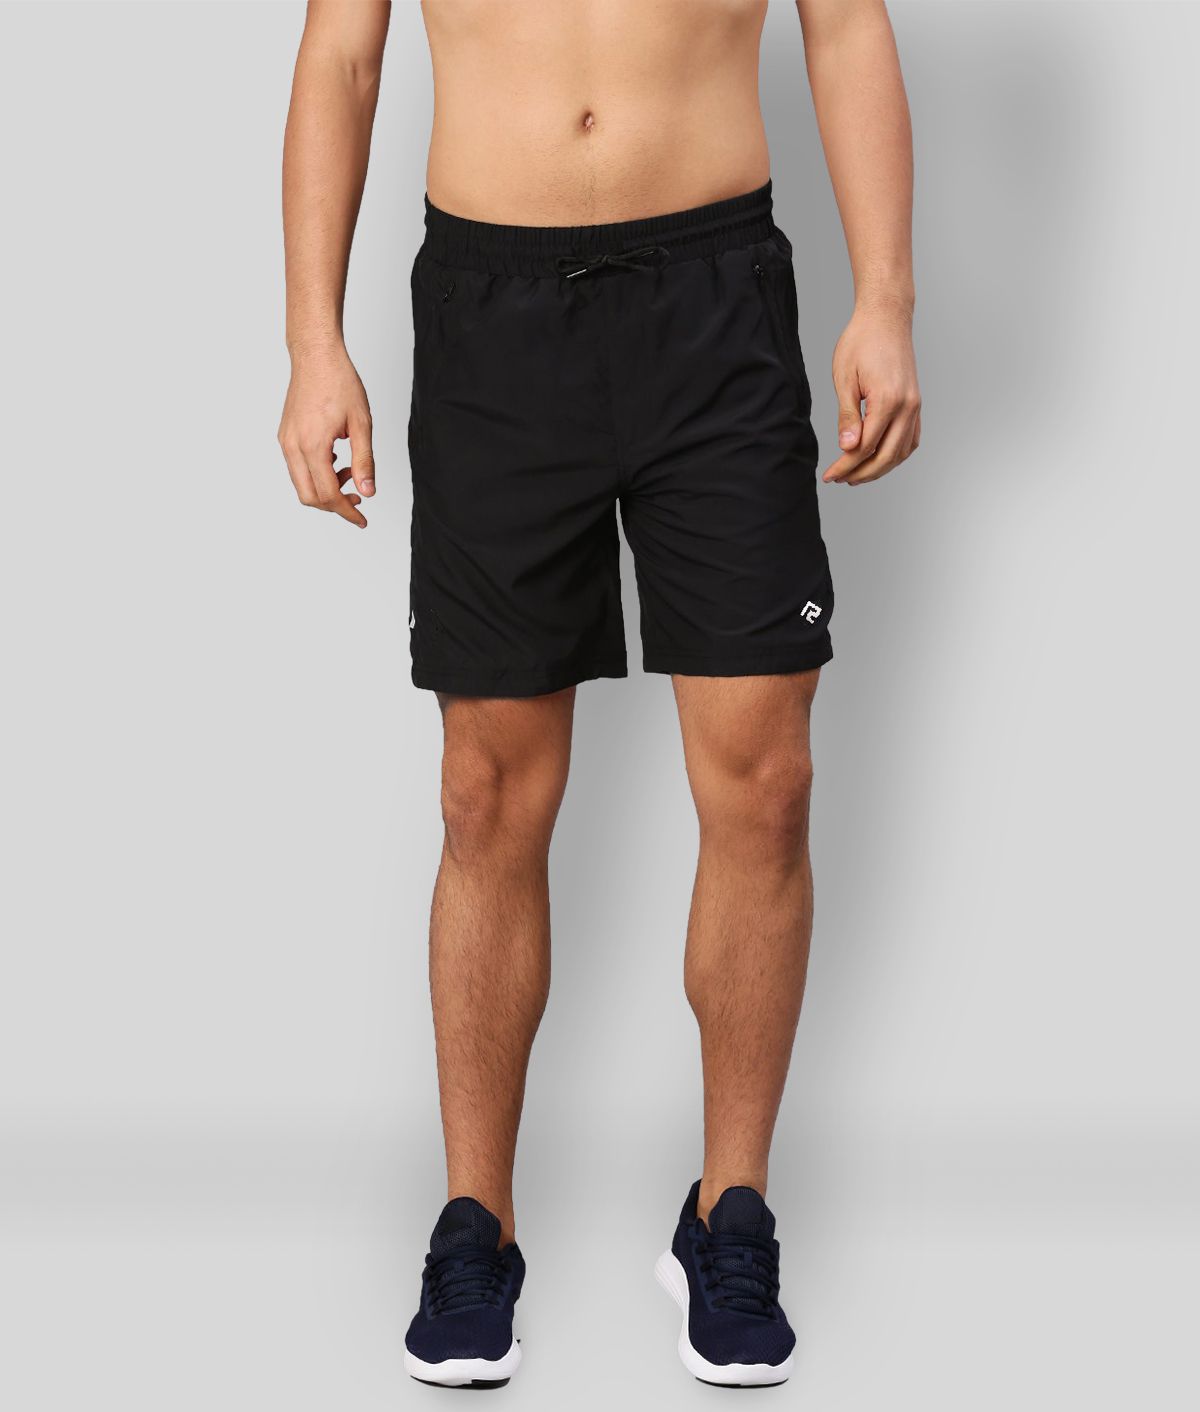     			RANBOLT Black Polyester Lycra Running Shorts